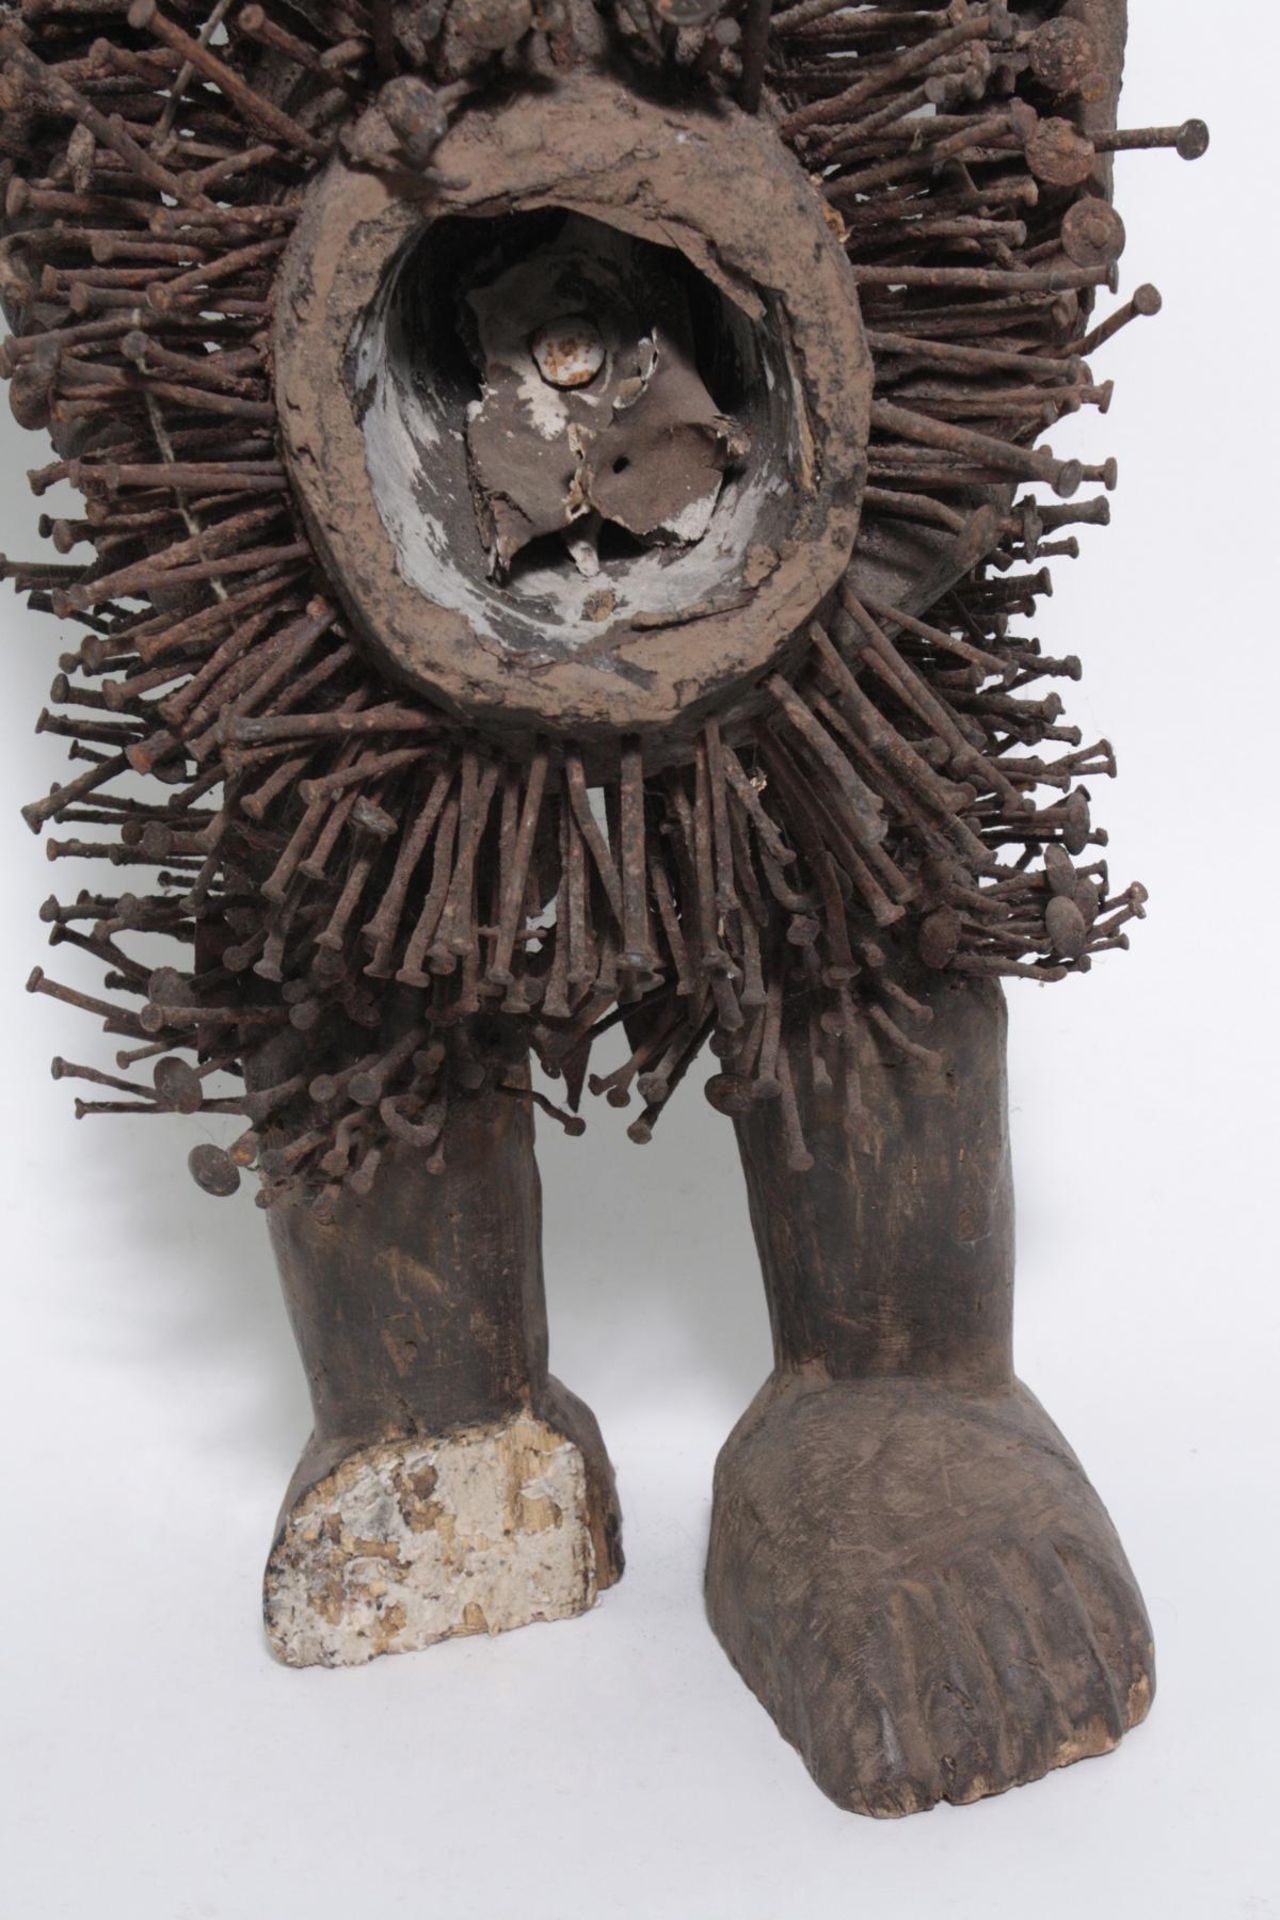 Doppelkopf-Nagelfetisch-Ritual Figur. Kongo-Yombe, Nkisi Nkondi, 1. Hälfte 20. Jh. - Bild 3 aus 9